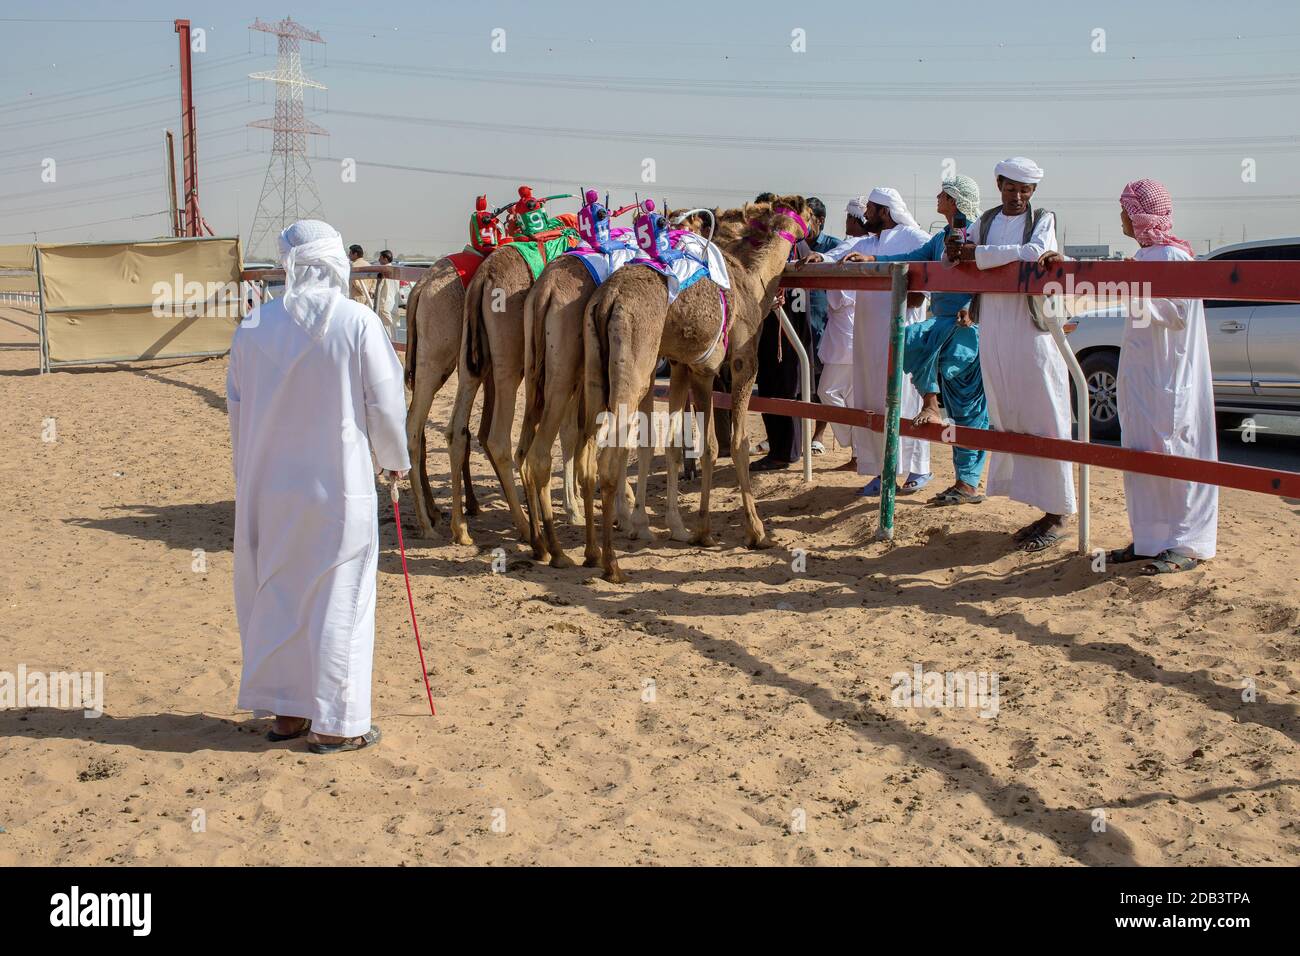 Emirats Arabes Unis / Al Dhaid / Camel Race in Région centrale de l'émirat de Sharjah aux États-Unis Émirats arabes voyant des animaux flanqués d'étendues Banque D'Images